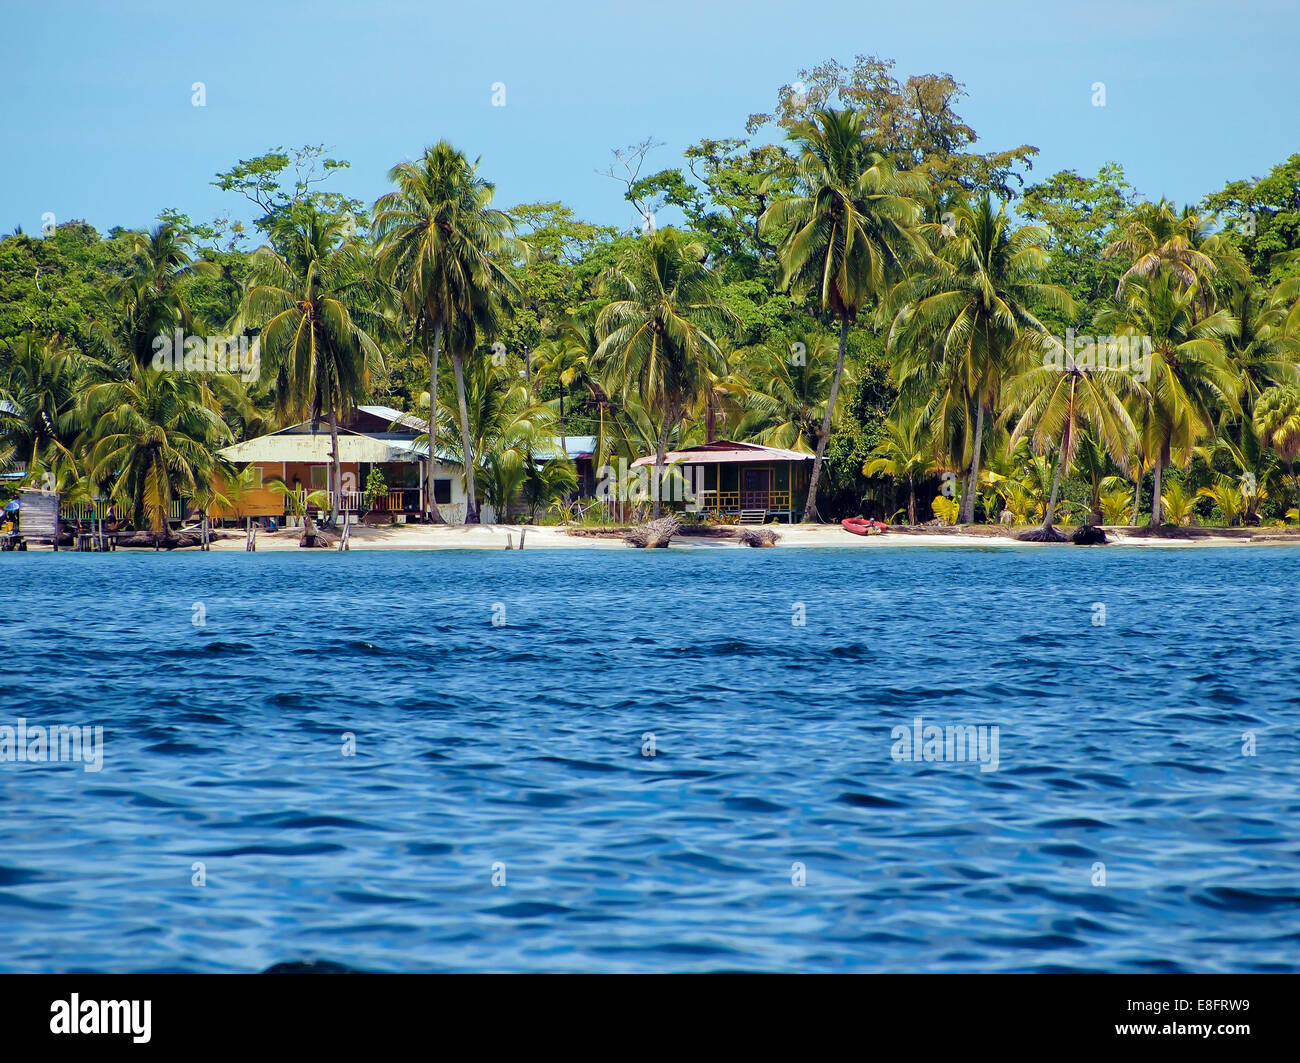 Spiaggia tropicale con le tipiche case dei Caraibi sotto gli alberi di cocco Foto Stock